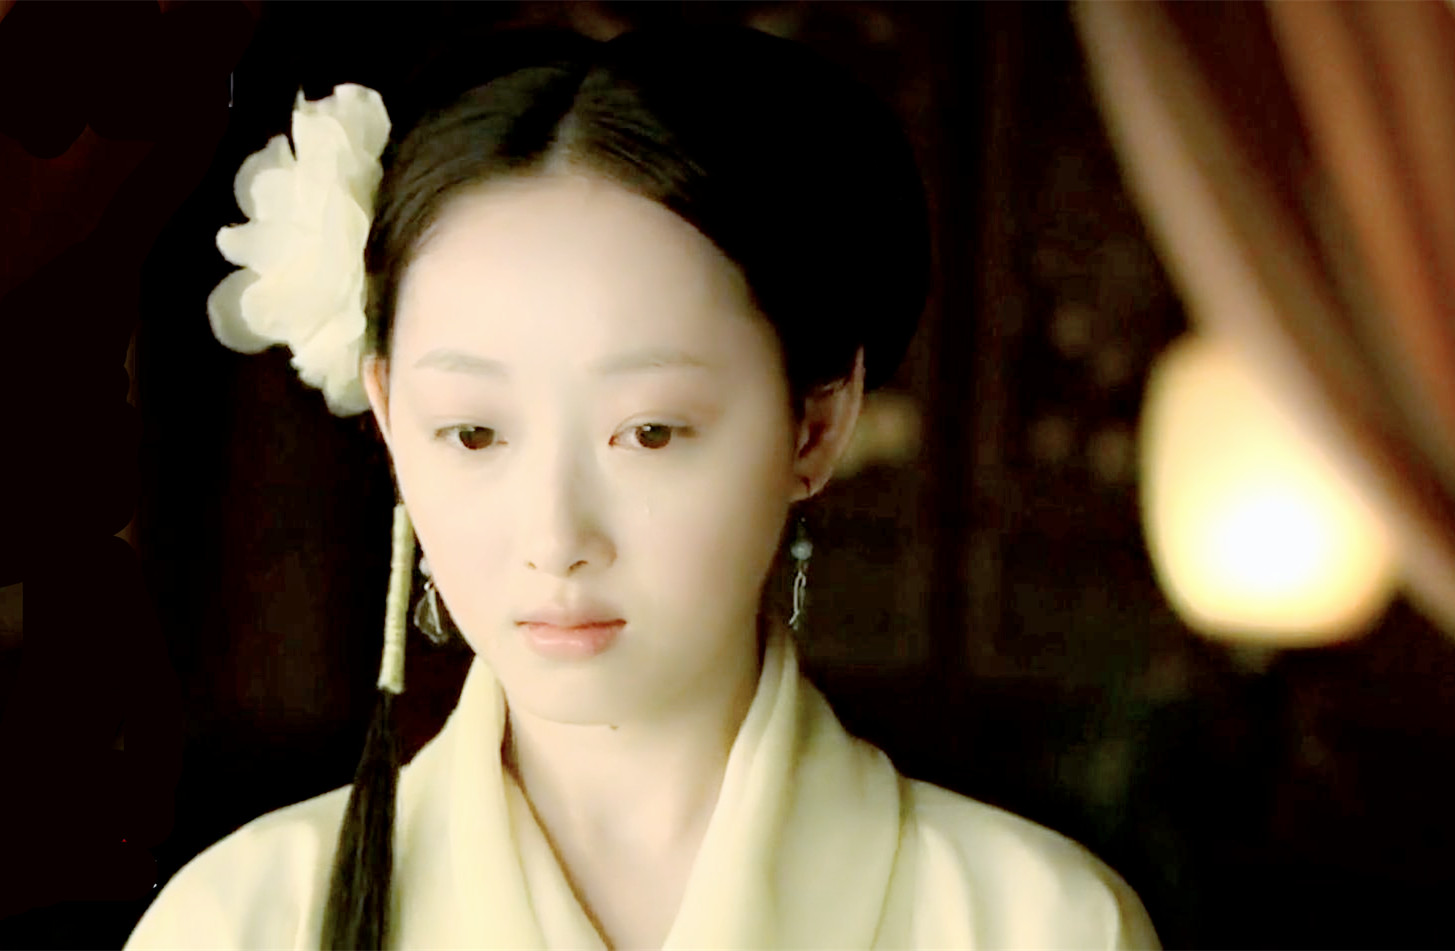 林黛玉,中国古典名著《红楼梦》的女主角,金陵十二钗之首 出自2010